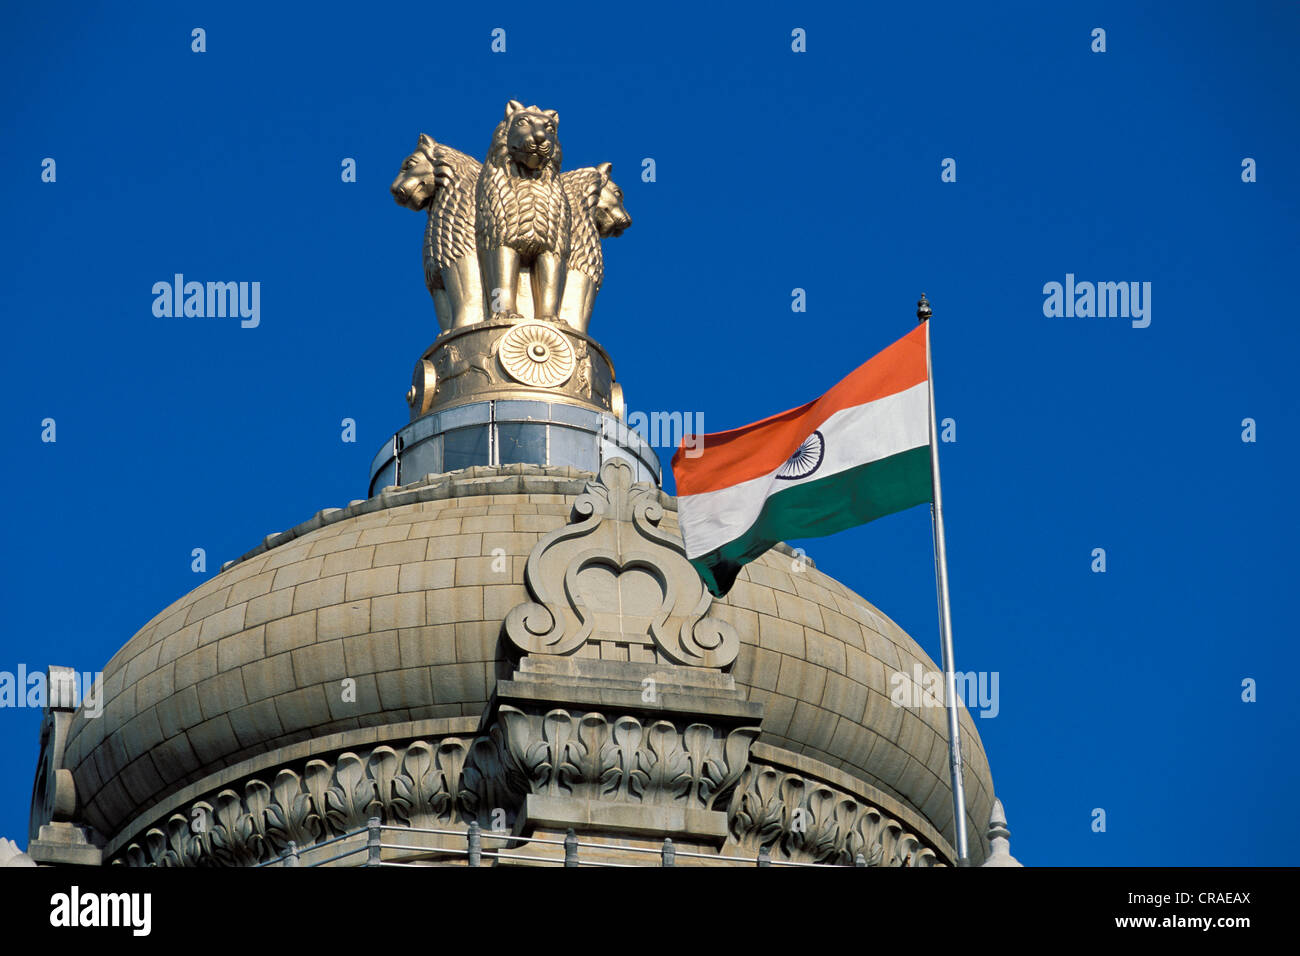 Lion capital, emblème national de l'Inde, de l'état de la Maison du Parlement, Bangalore, Karnataka, Inde du Sud, Inde, Asie Banque D'Images